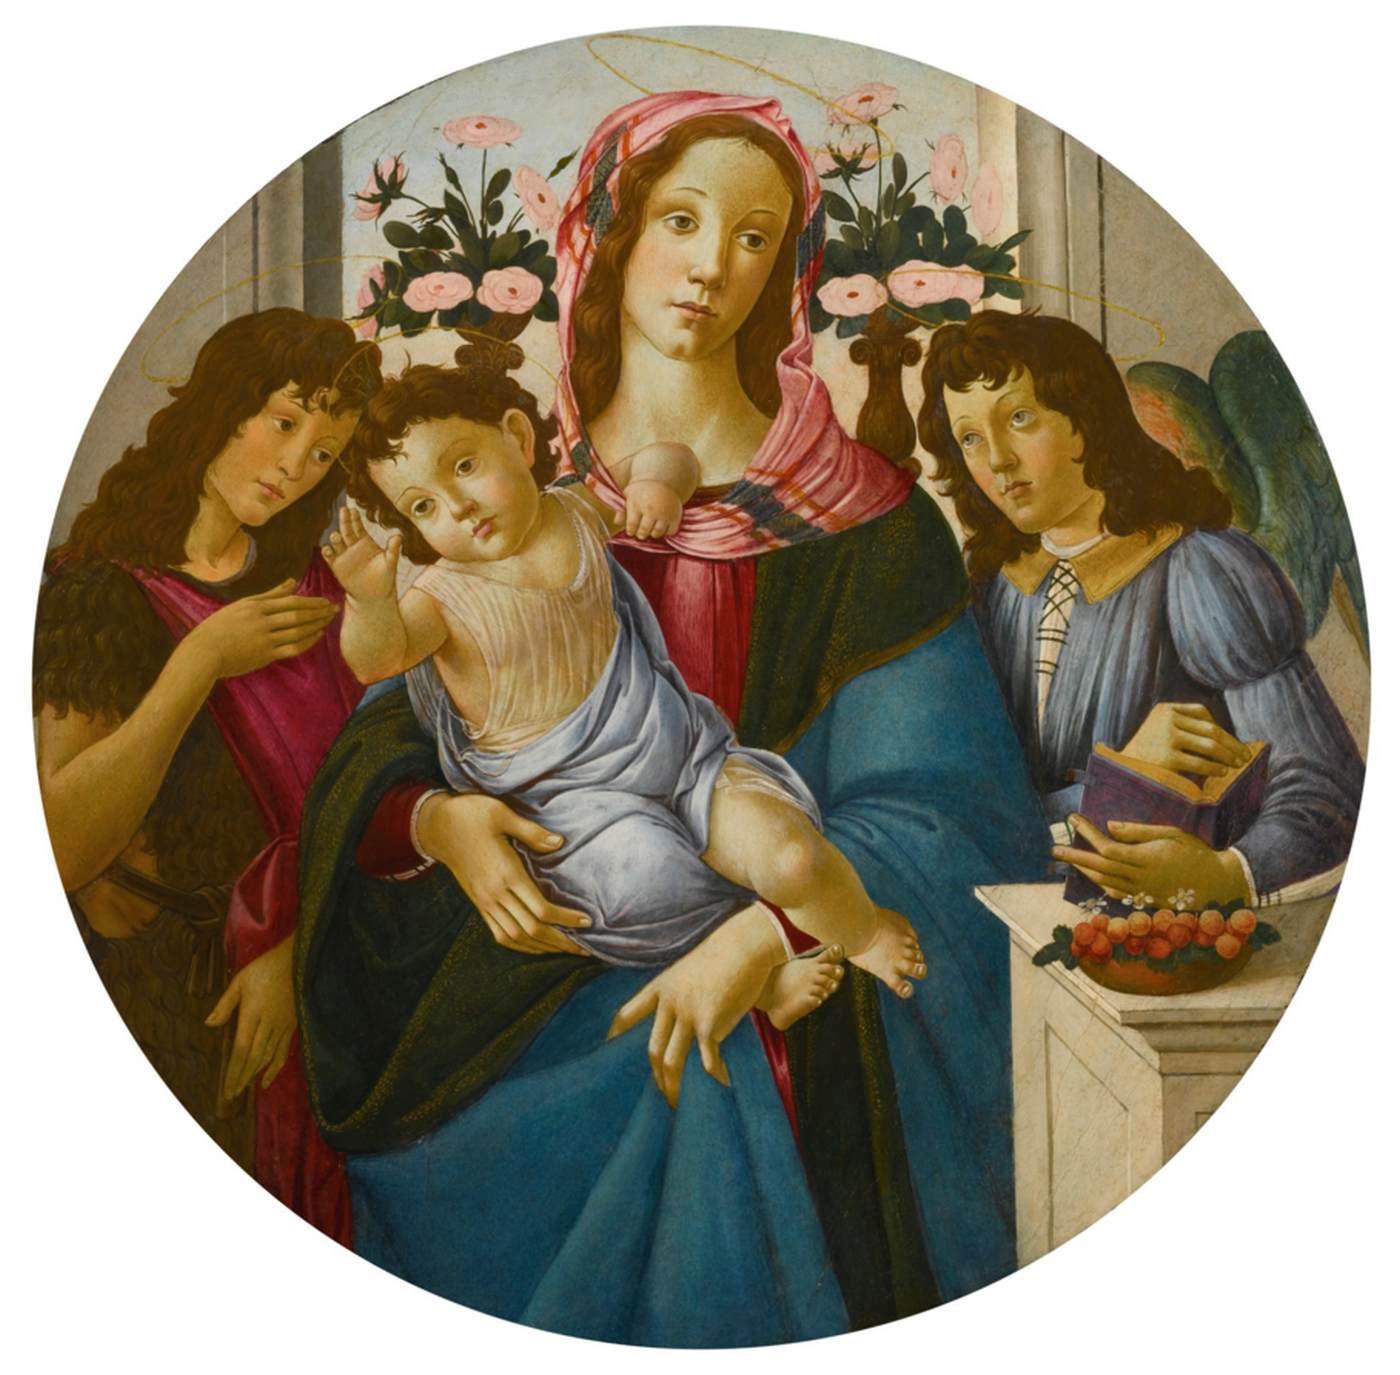 הבתולה והילד עם סנט ג'ון המטביל ומלאך